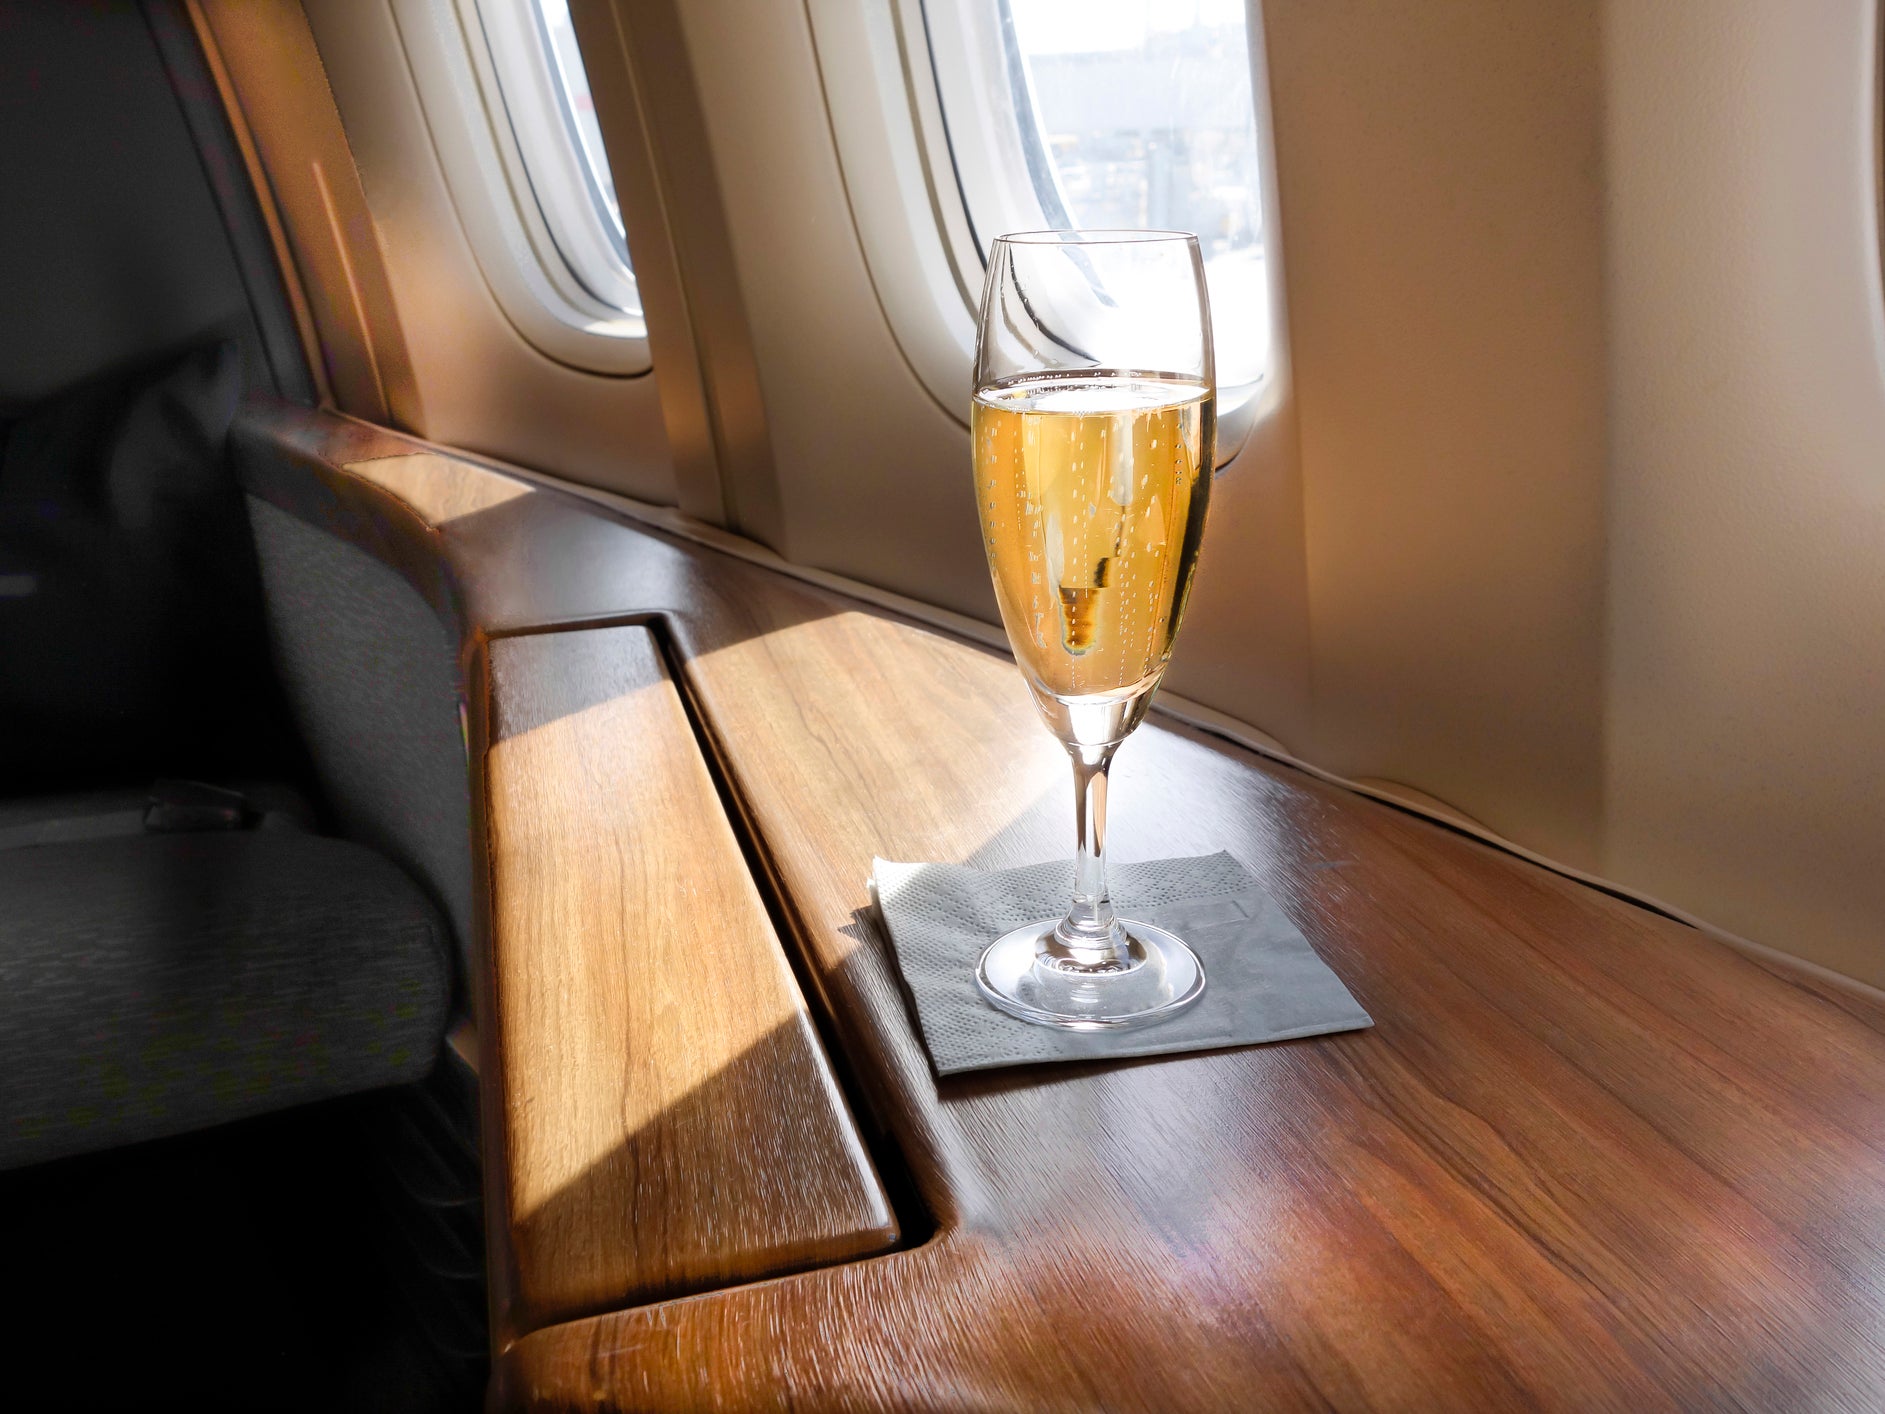 A glass of Champagne awaits a First Class passenger on an airline flight